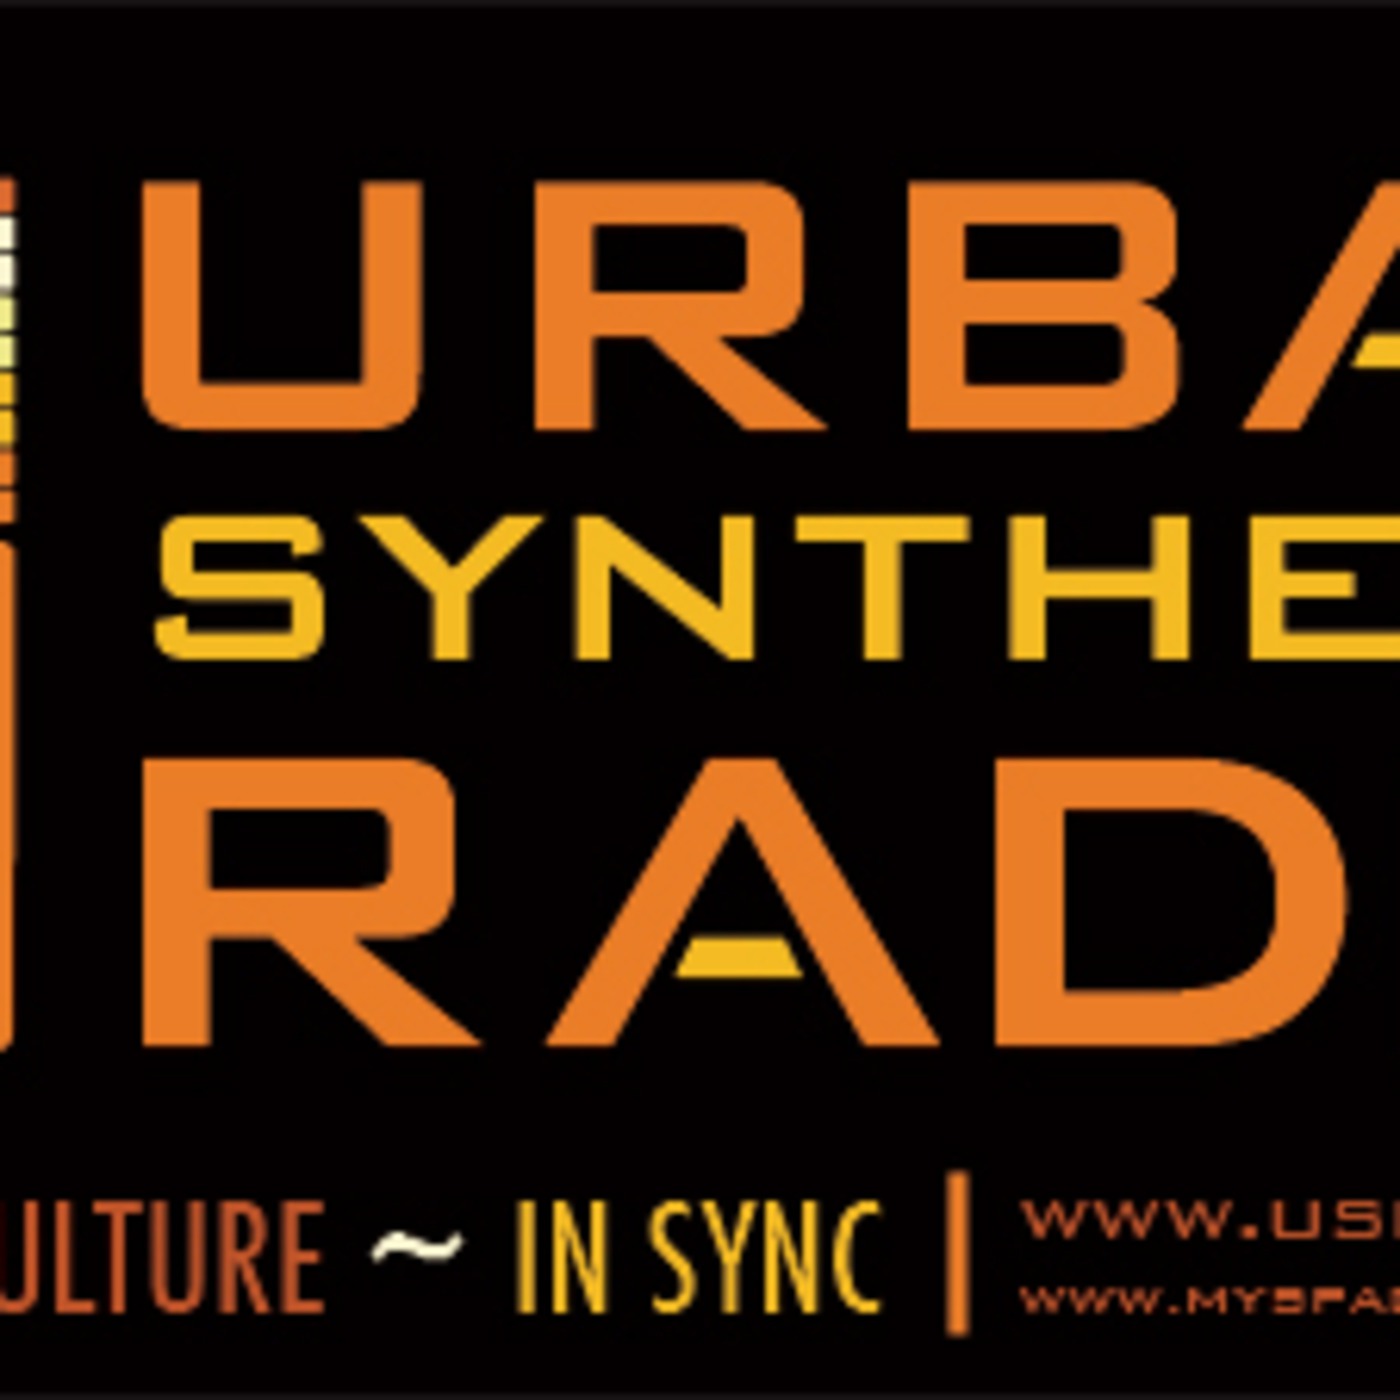 USR Radio Podcast:USR Radio